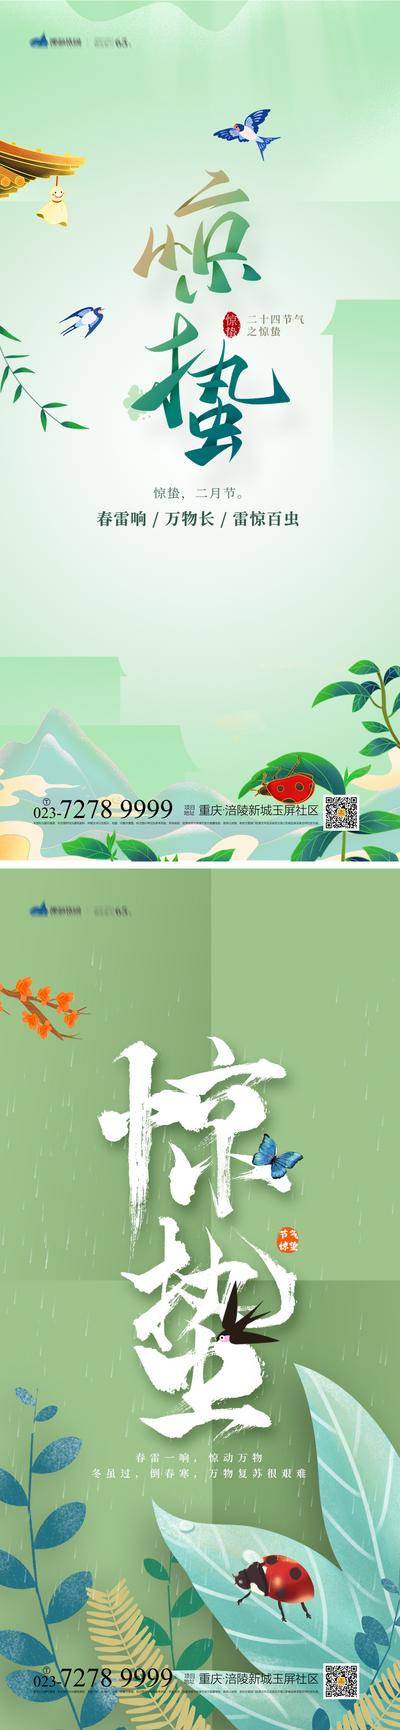 南门网 海报 地产 二十四节气 惊蛰 春天 鸟语花香 万物生长 插画